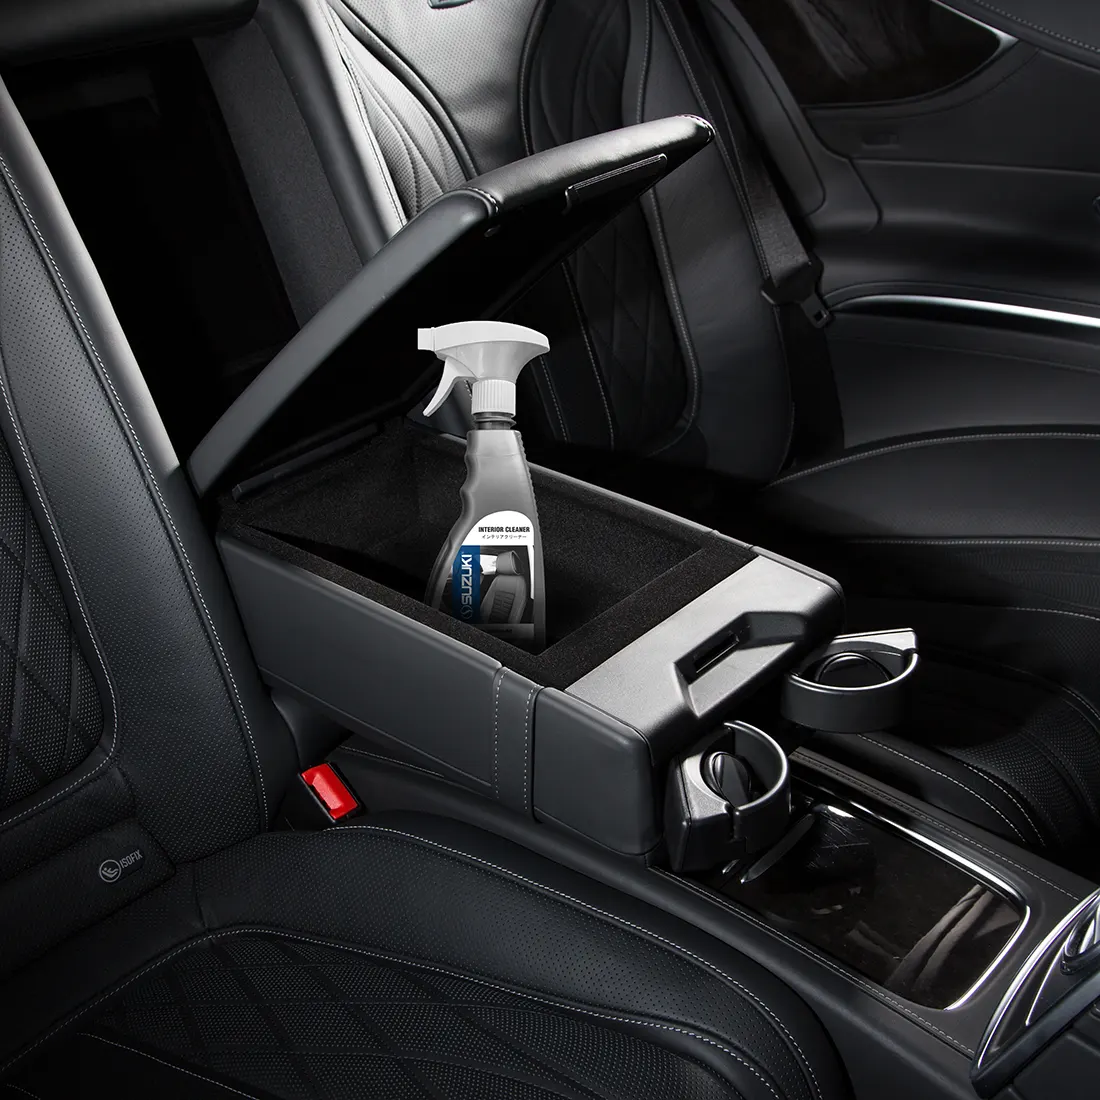 Suzuki car care product interior cleaner